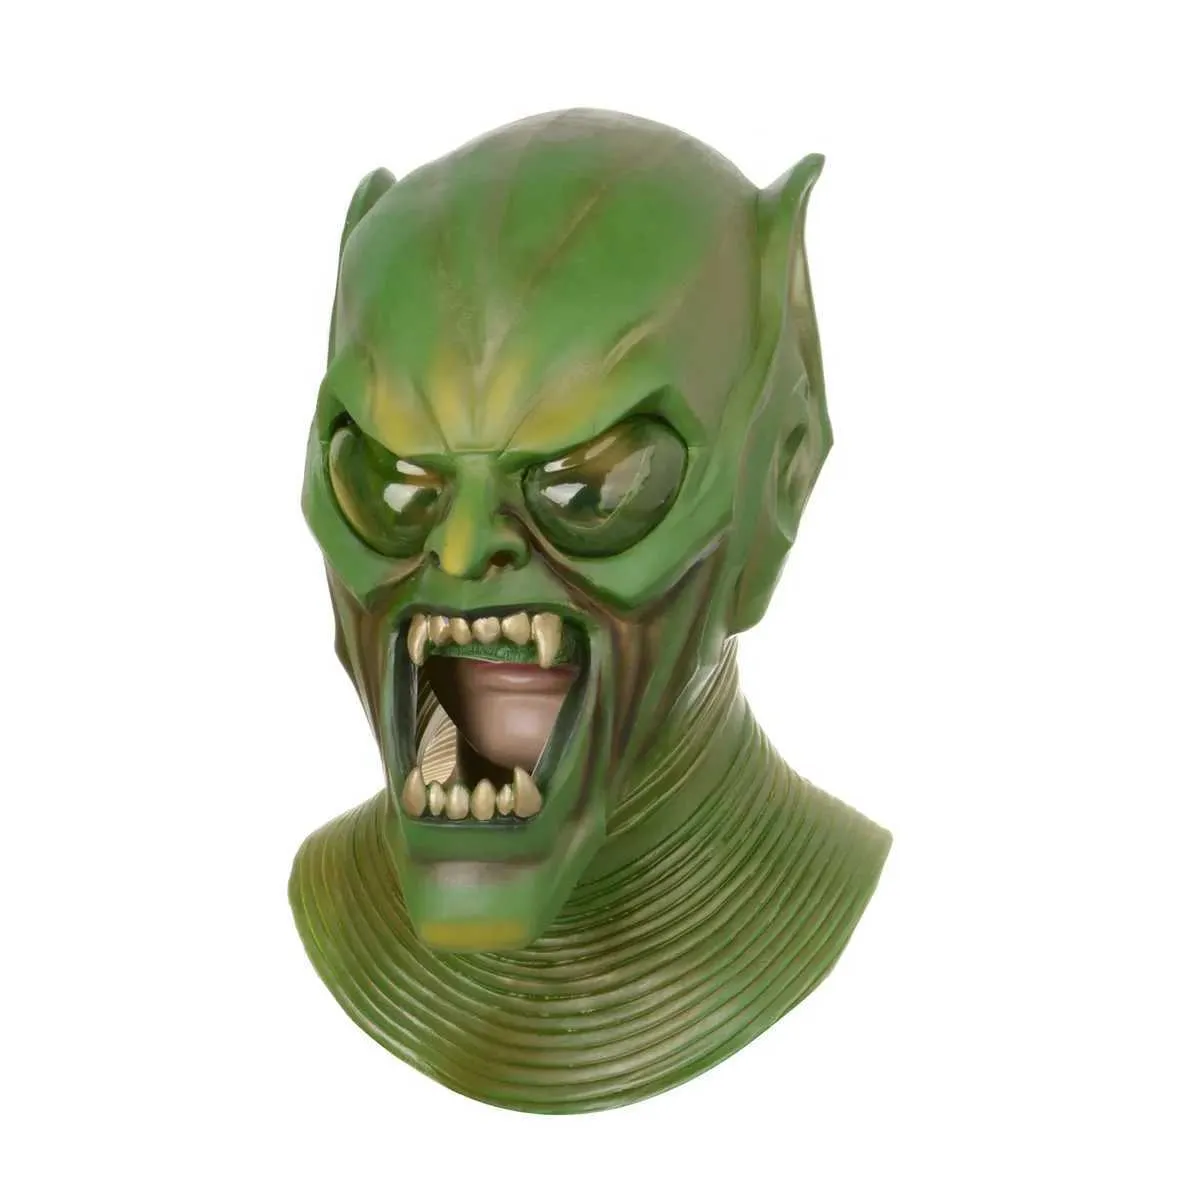 Party Masks Green Gobblin Duivel Volgelaatsmasker Latex Masque facial Halloween jeu de rôle Party Monster Kostoum Accessoires Scary Devil Children Face Maks Cos Q240508